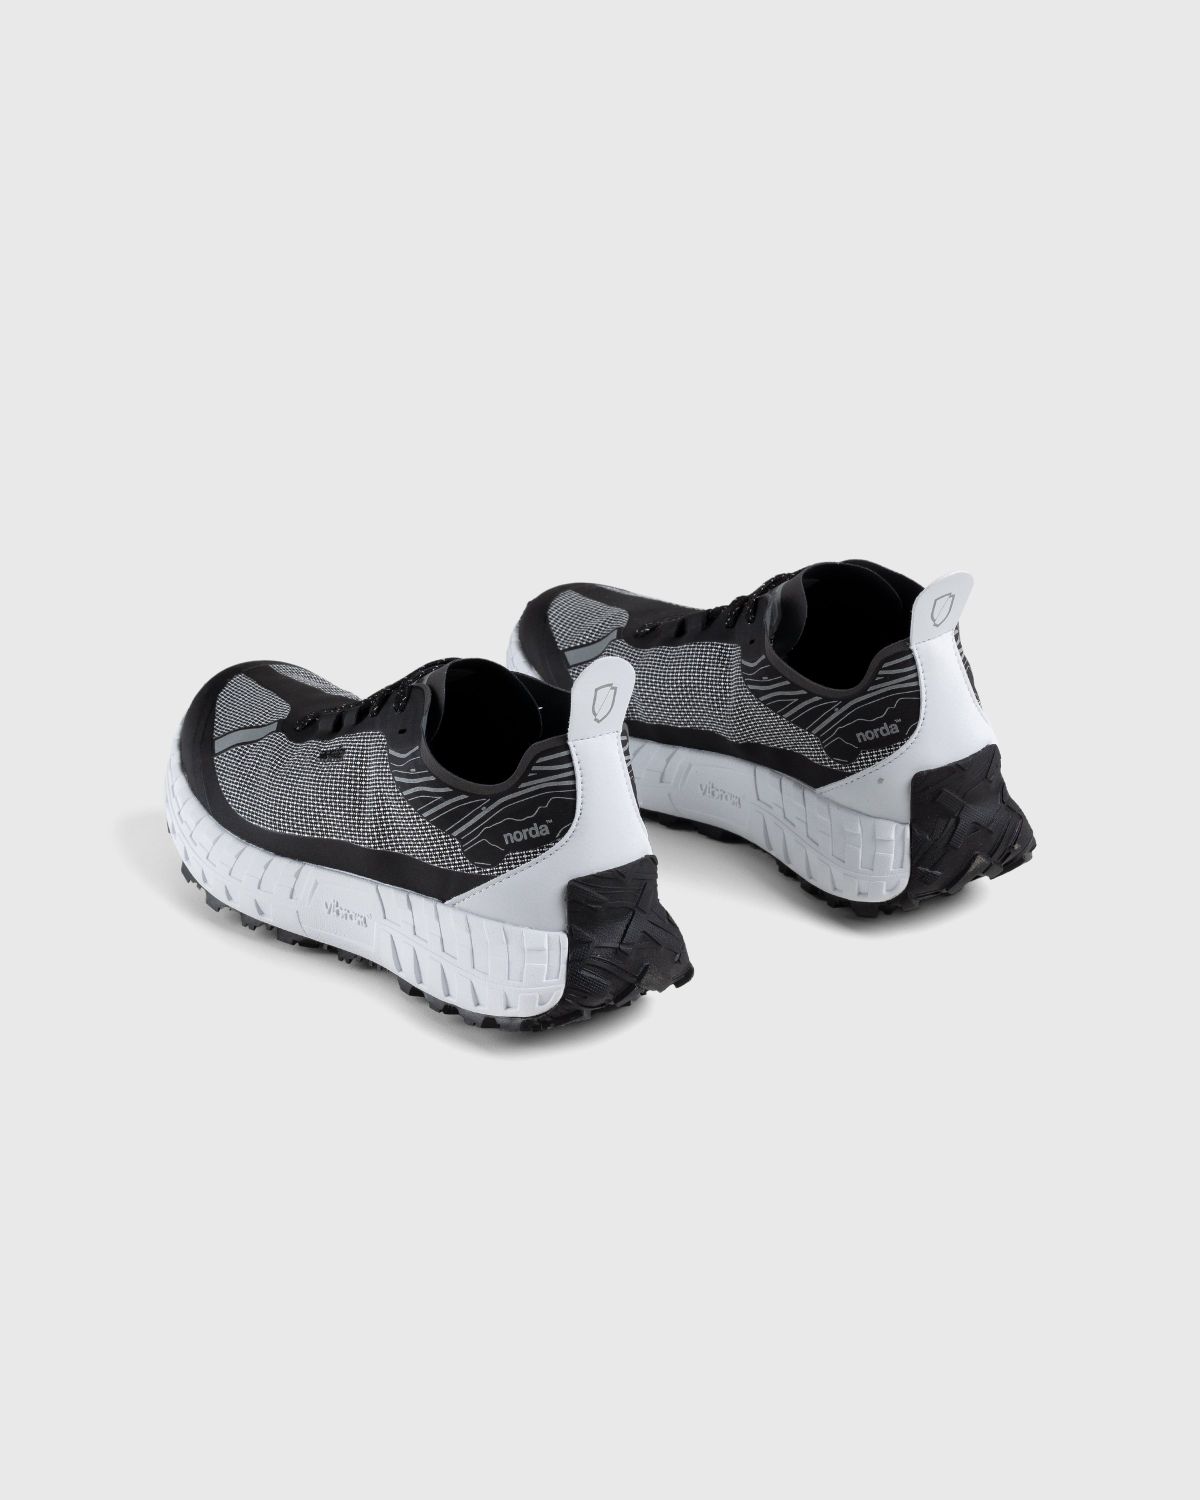 Norda – 001 M Black - Low Top Sneakers - Black - Image 3